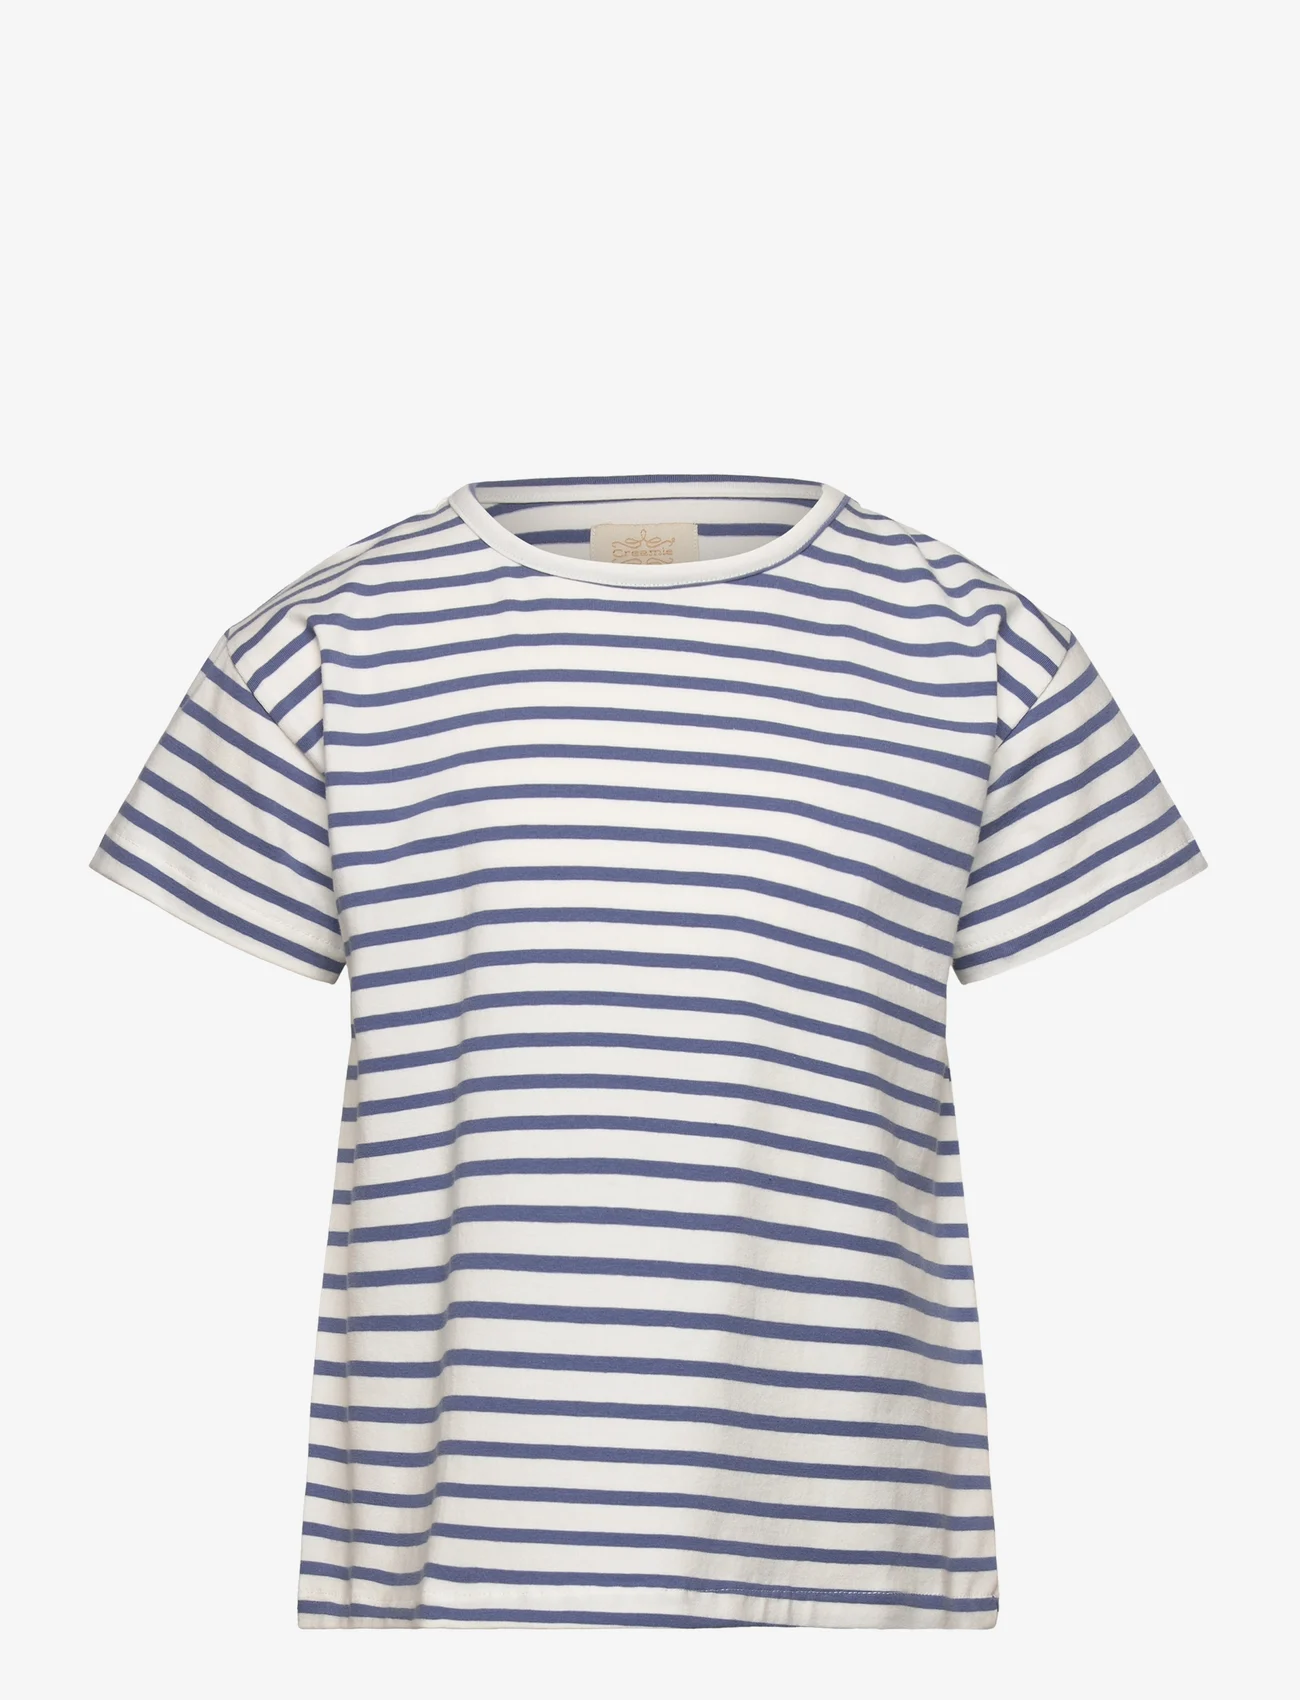 Creamie - T-shirt SS Stripe - kurzärmelige - colony blue - 0